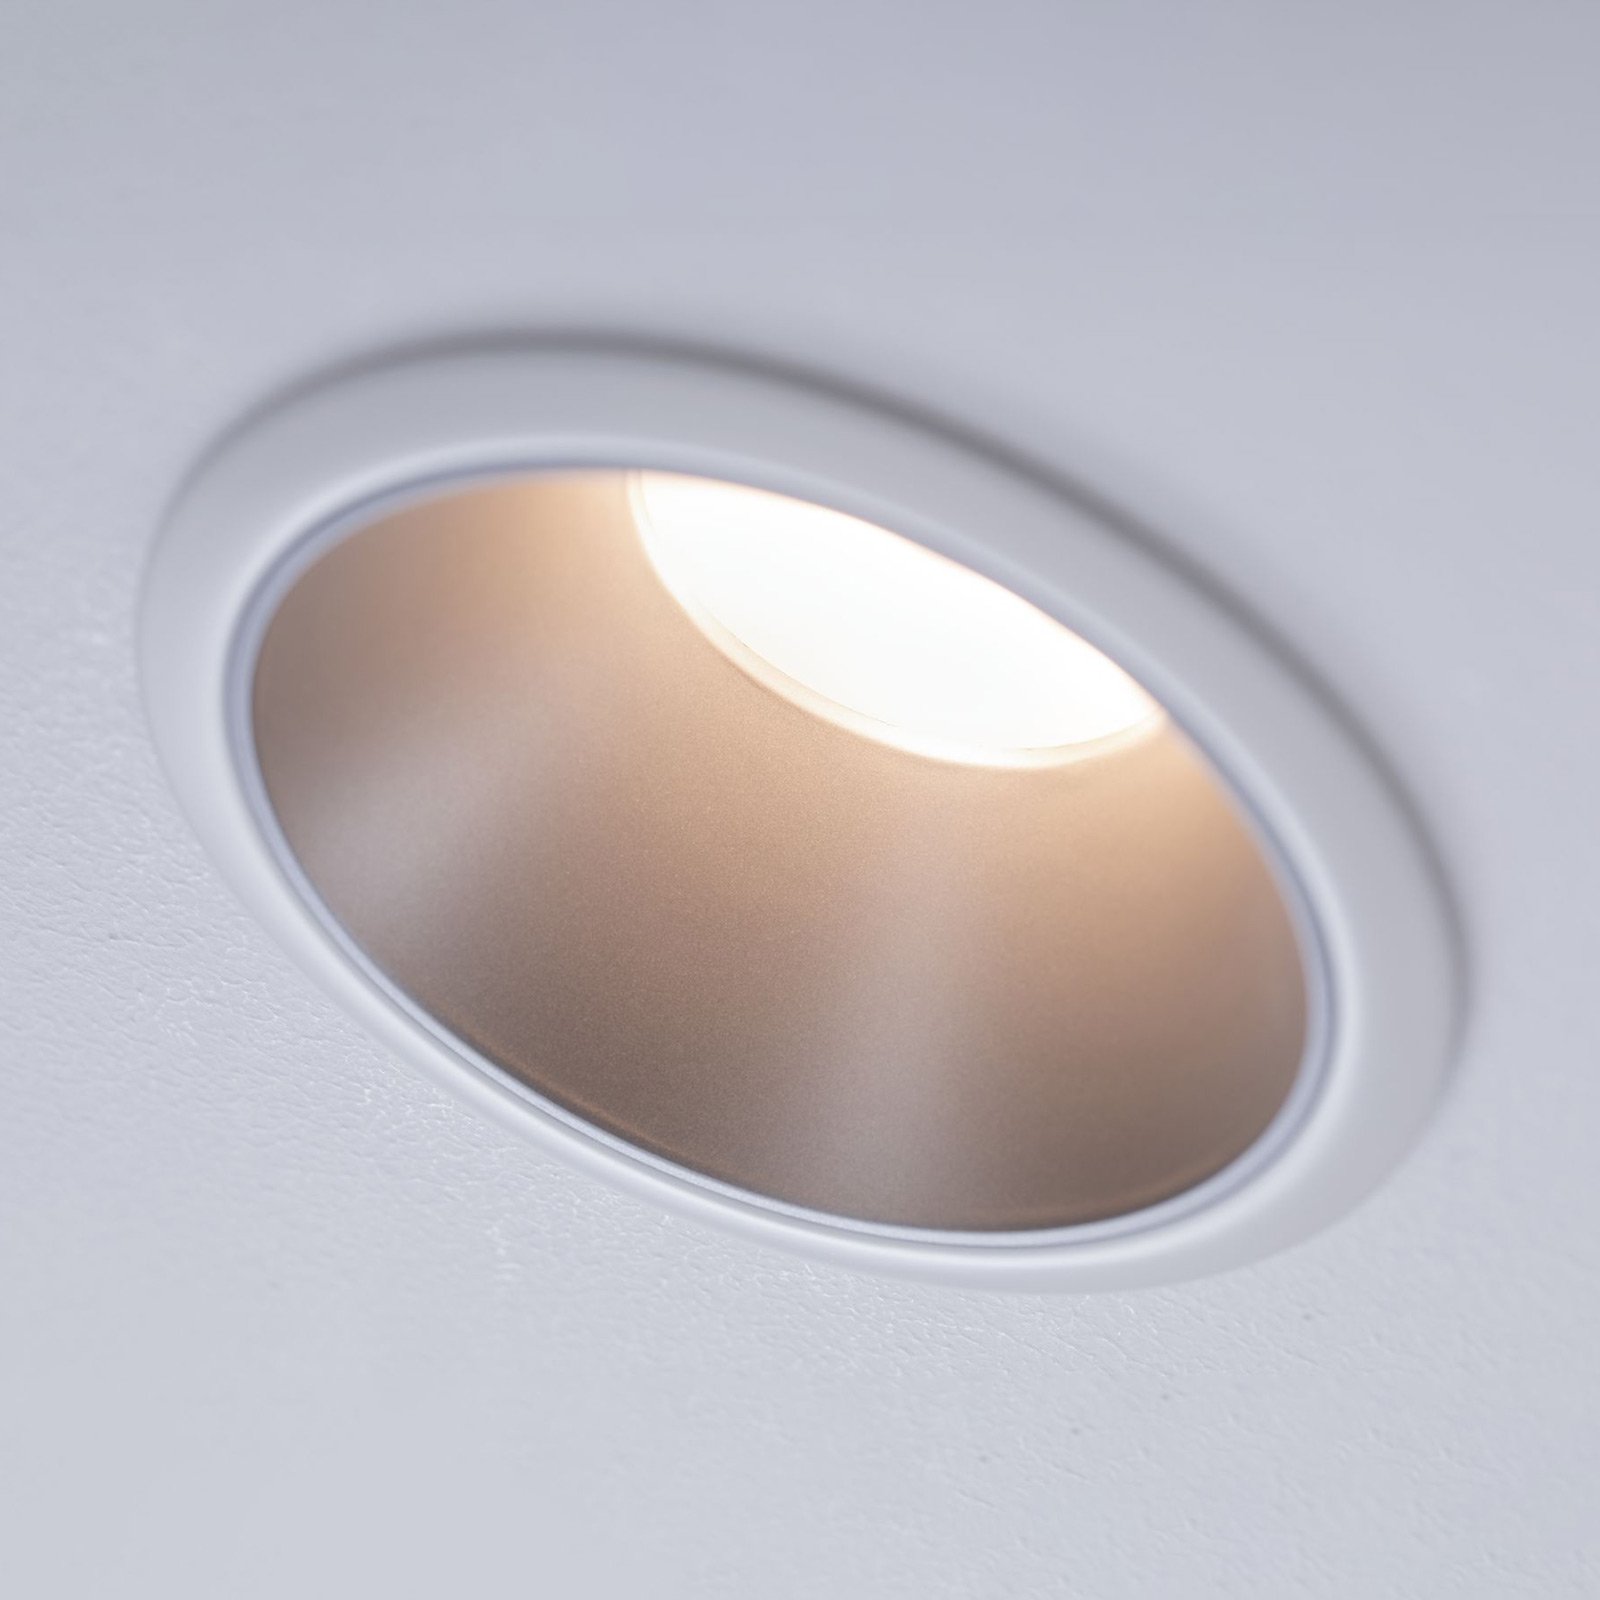 Paulmann Cole LED spotlight, silver/white set of 3